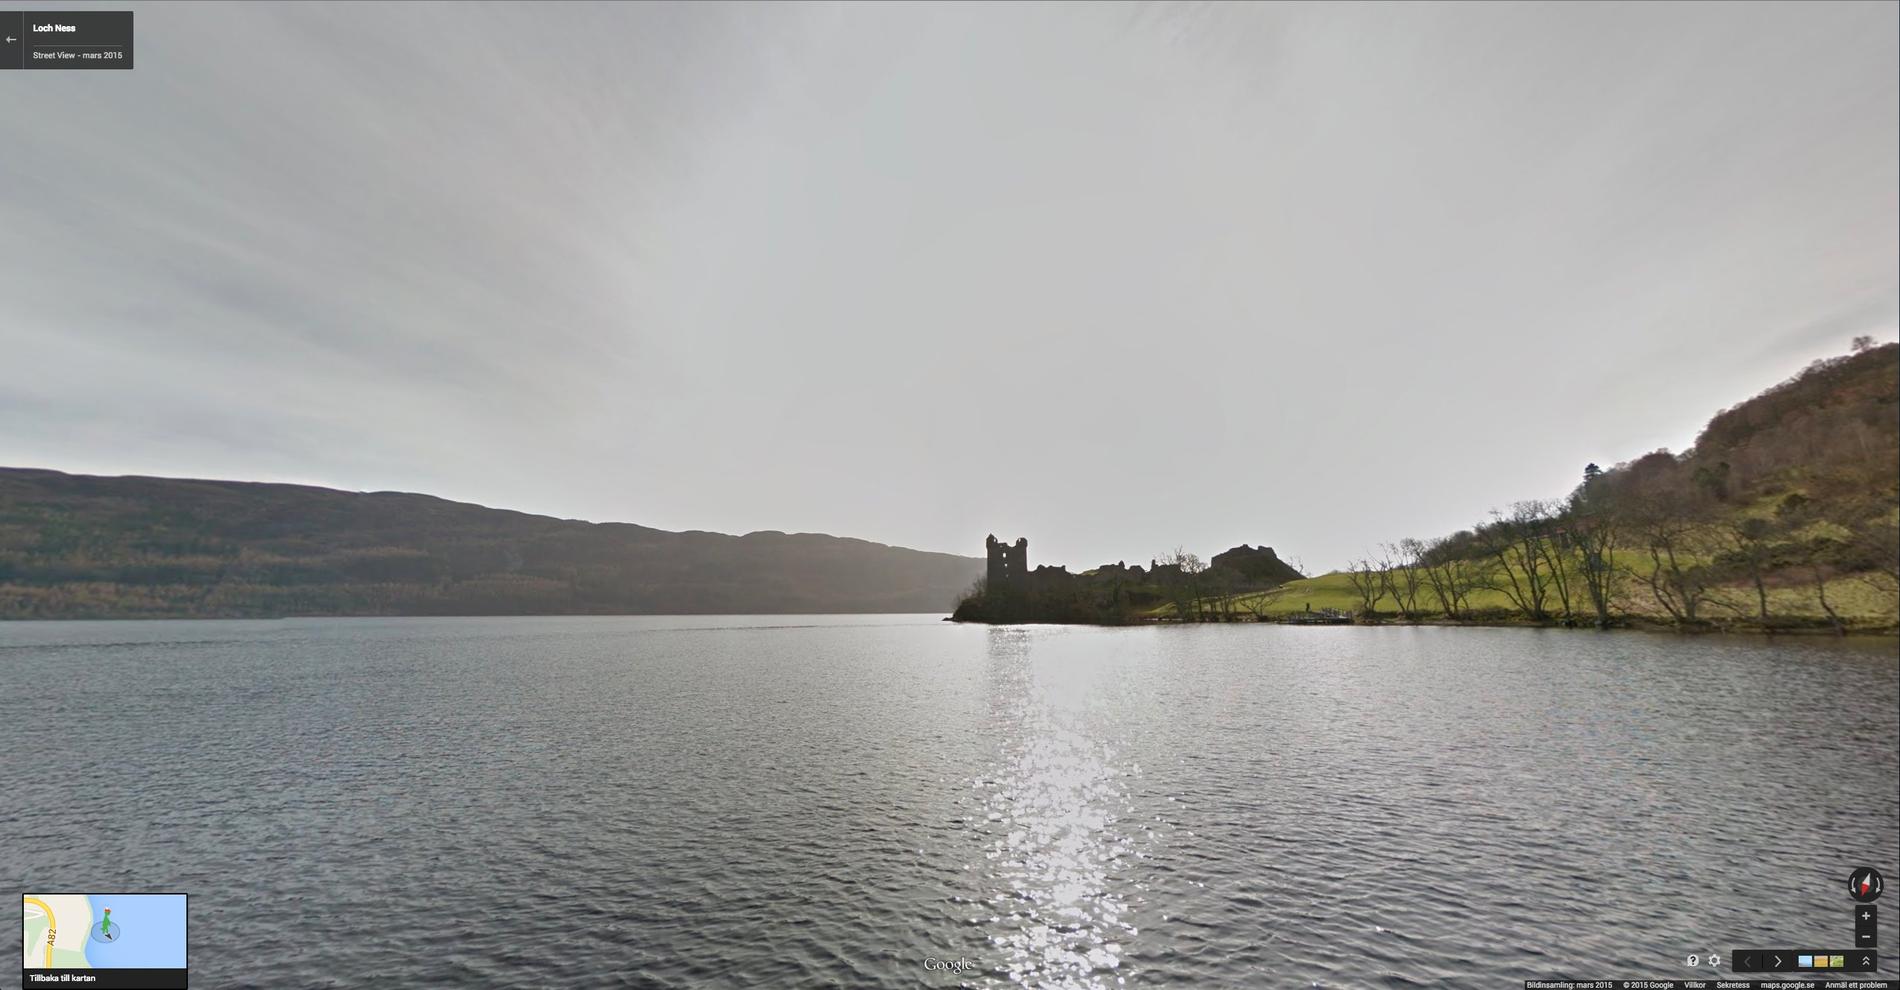 Vill du inte leda odjur kan du bara glida runt på Loch Ness och njuta av det skotska höglandets vyer.